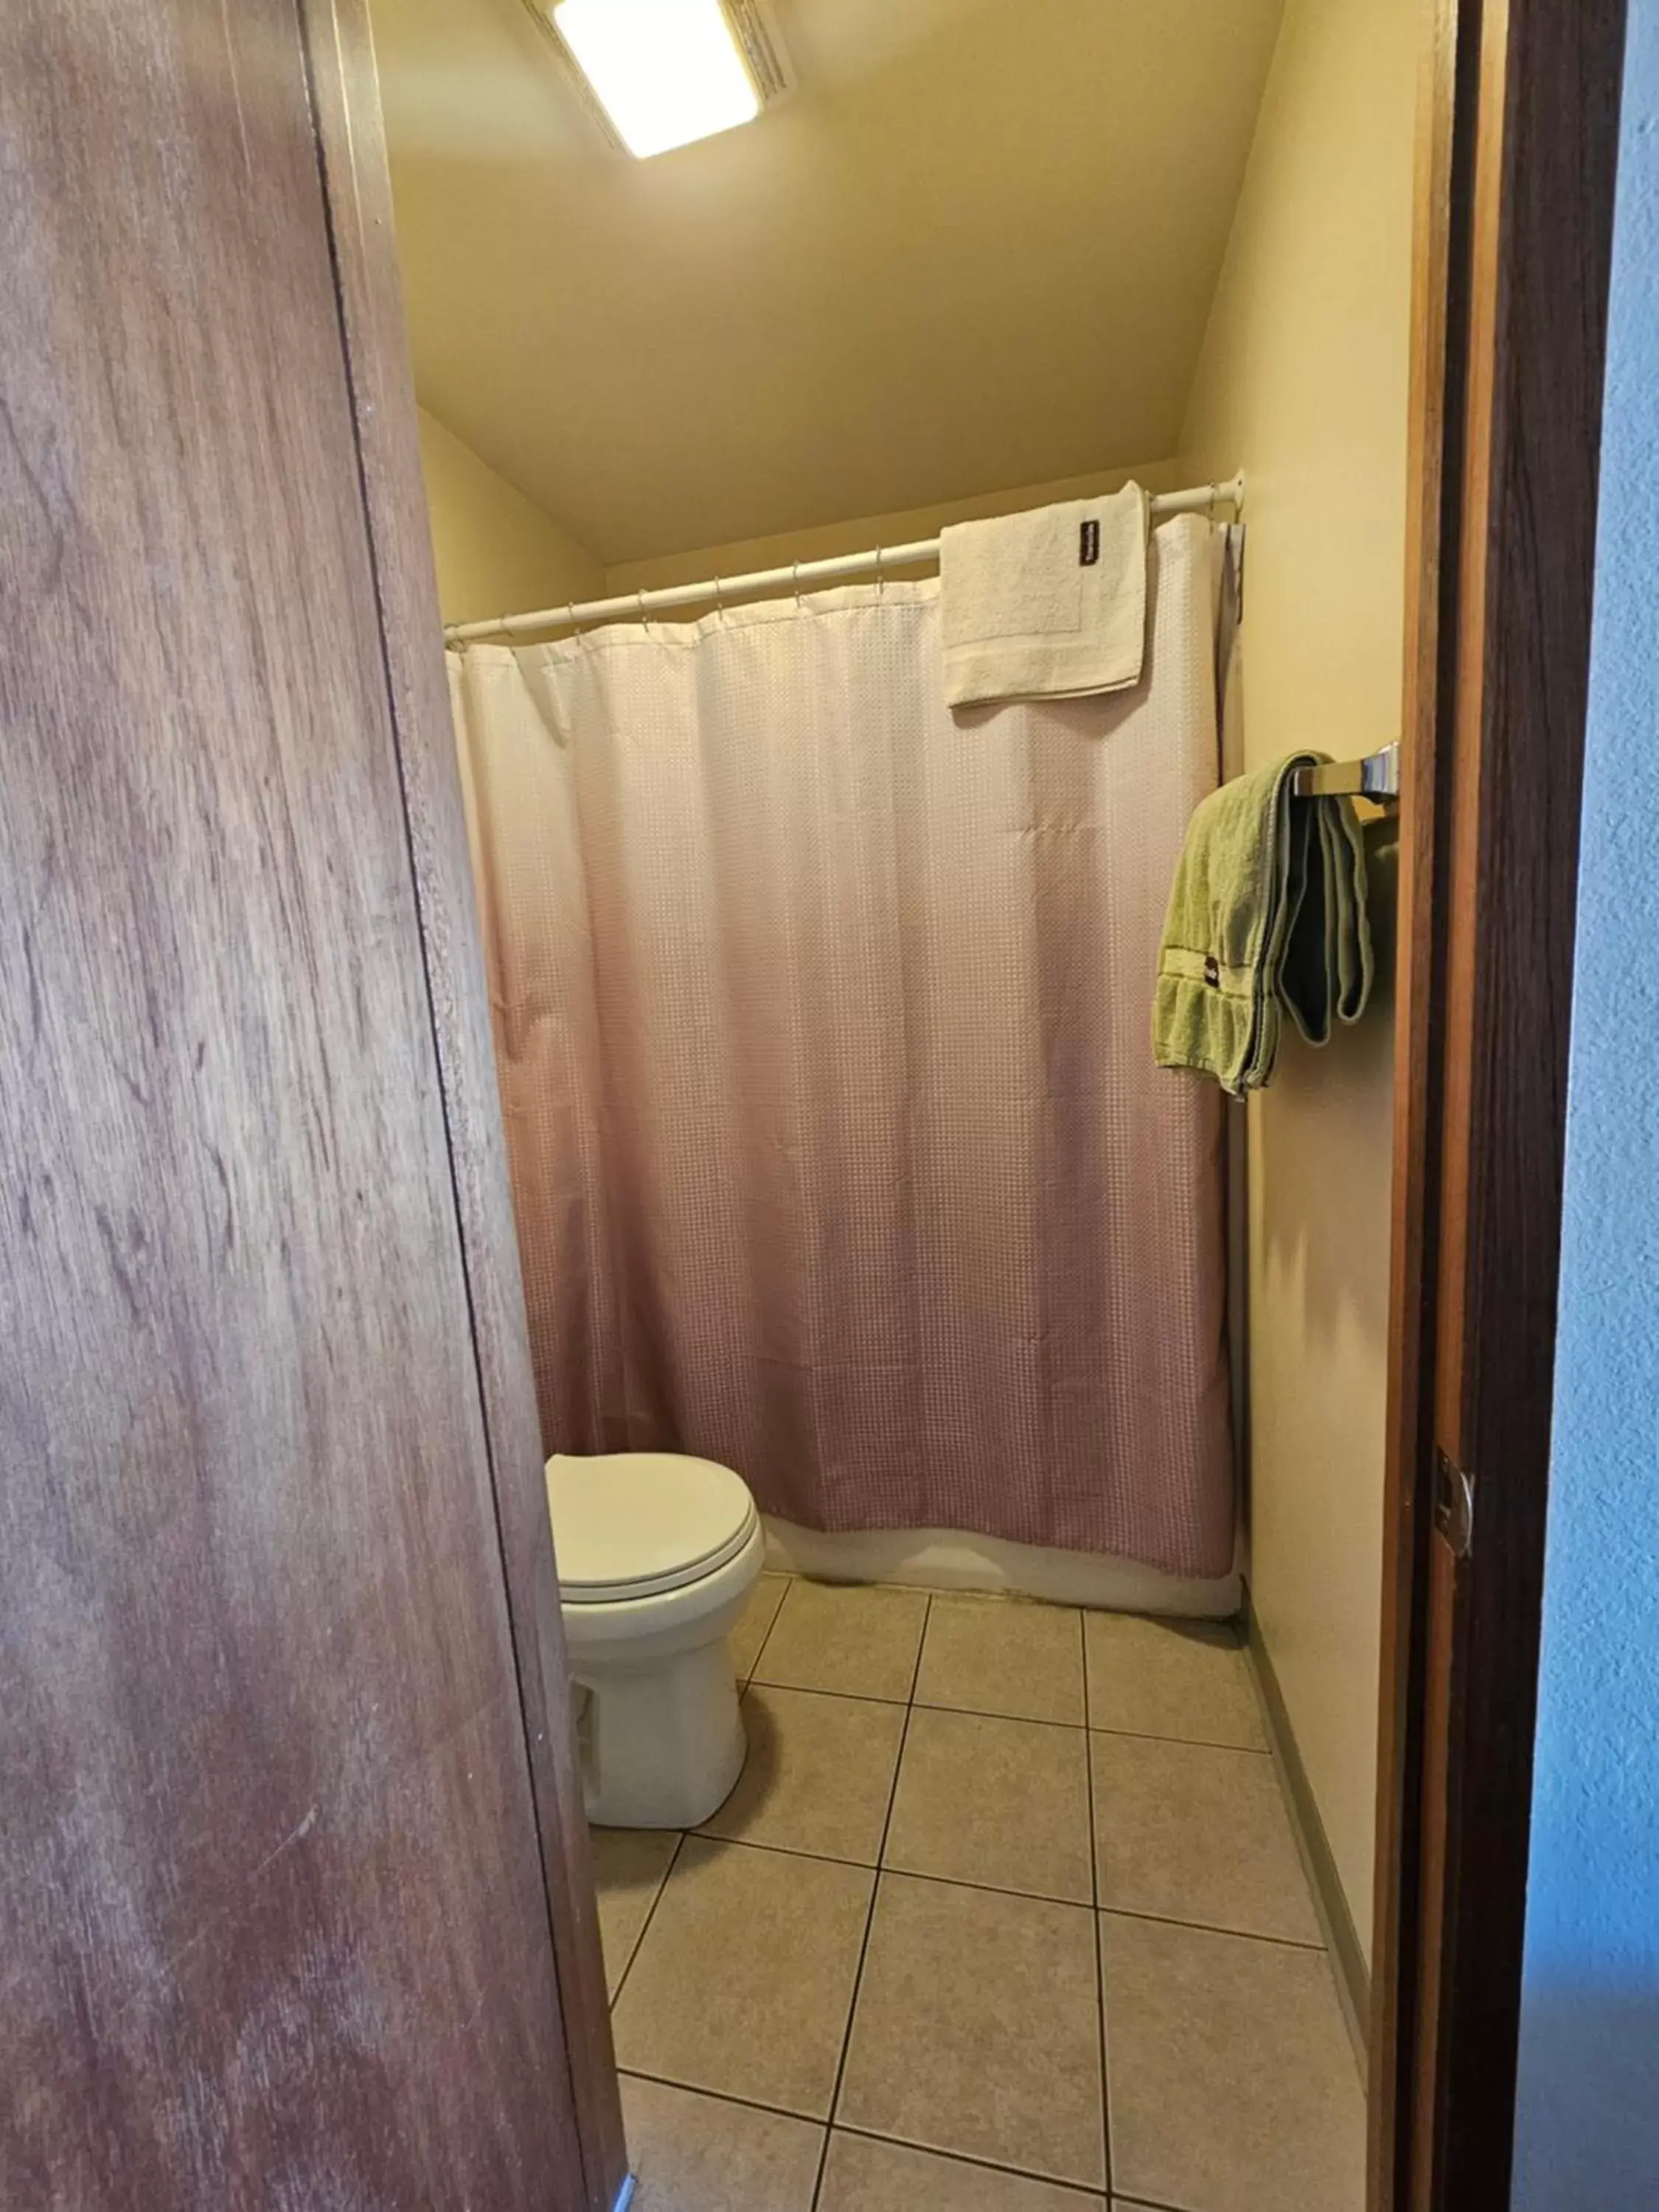 Shower, Bathroom in Cle Elum Travelers Inn